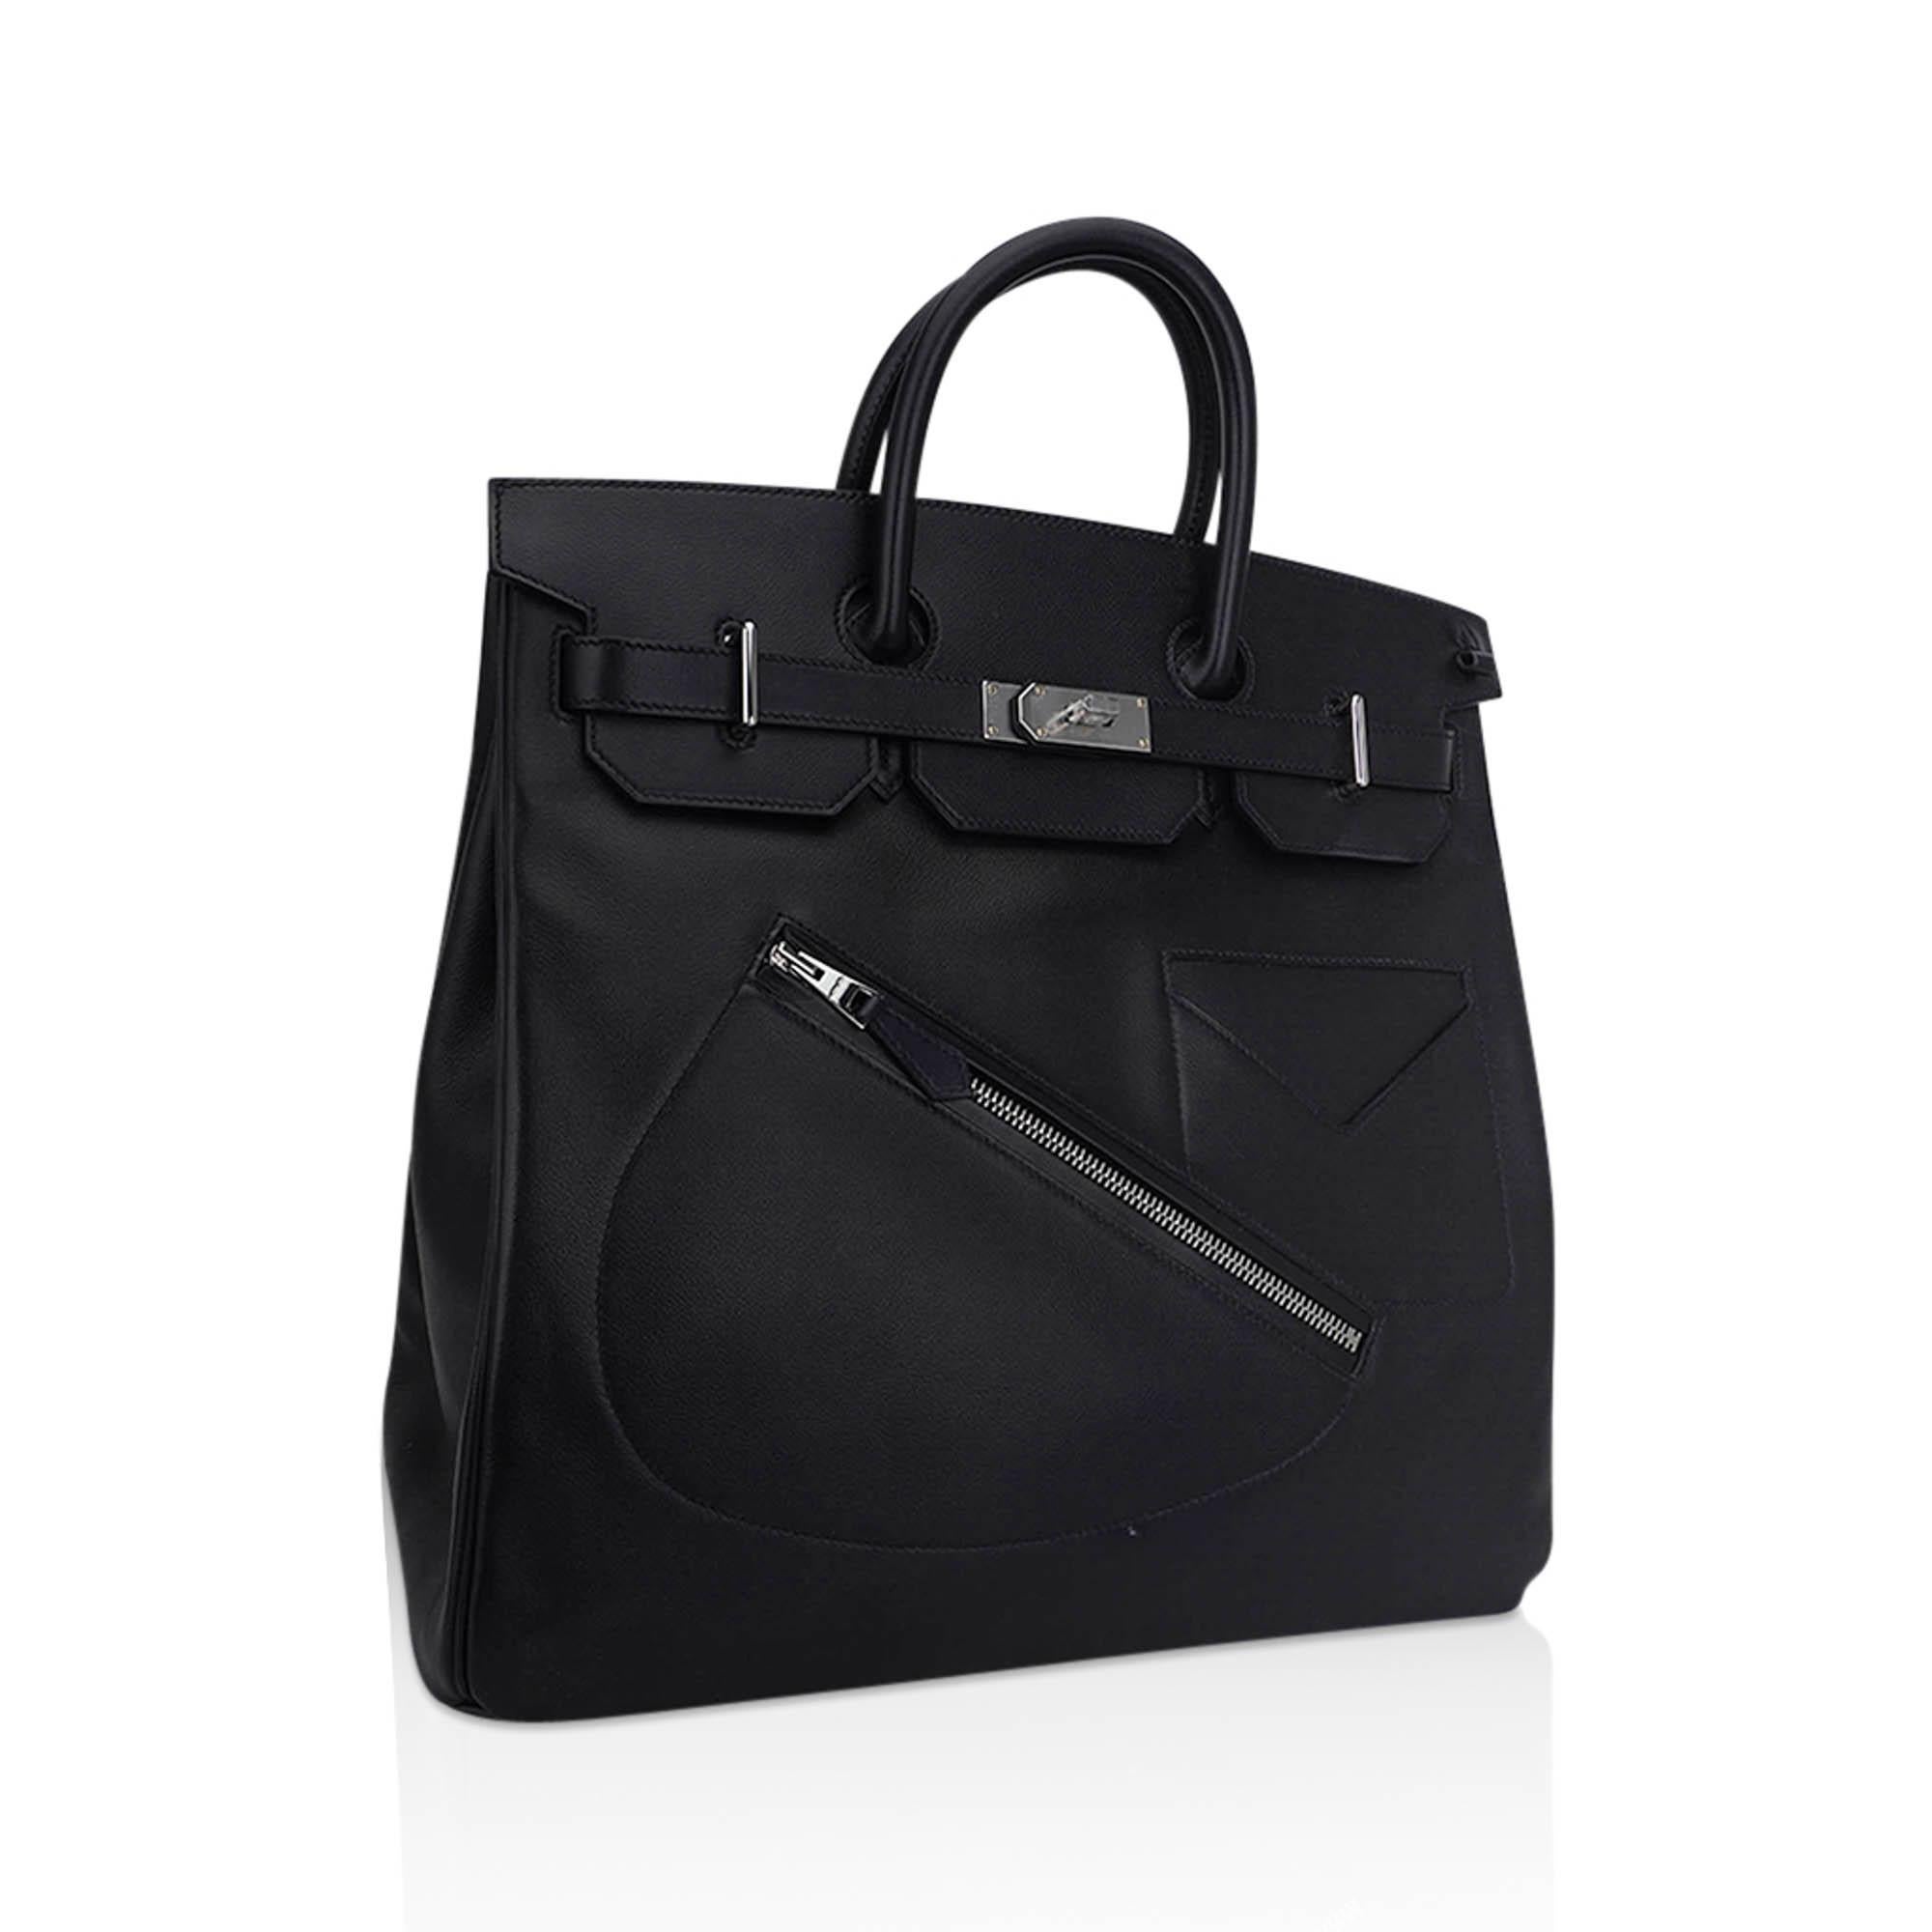 Mightychic propose un sac HAC Rock Birkin 40 (Haut a Courroies) d'Hermès en édition limitée, en cuir noir et Volupto.
Le sac est doté d'une poche zippée en forme de selle diagonale à l'avant, de surpiqûres ton sur ton et de doubles poignées